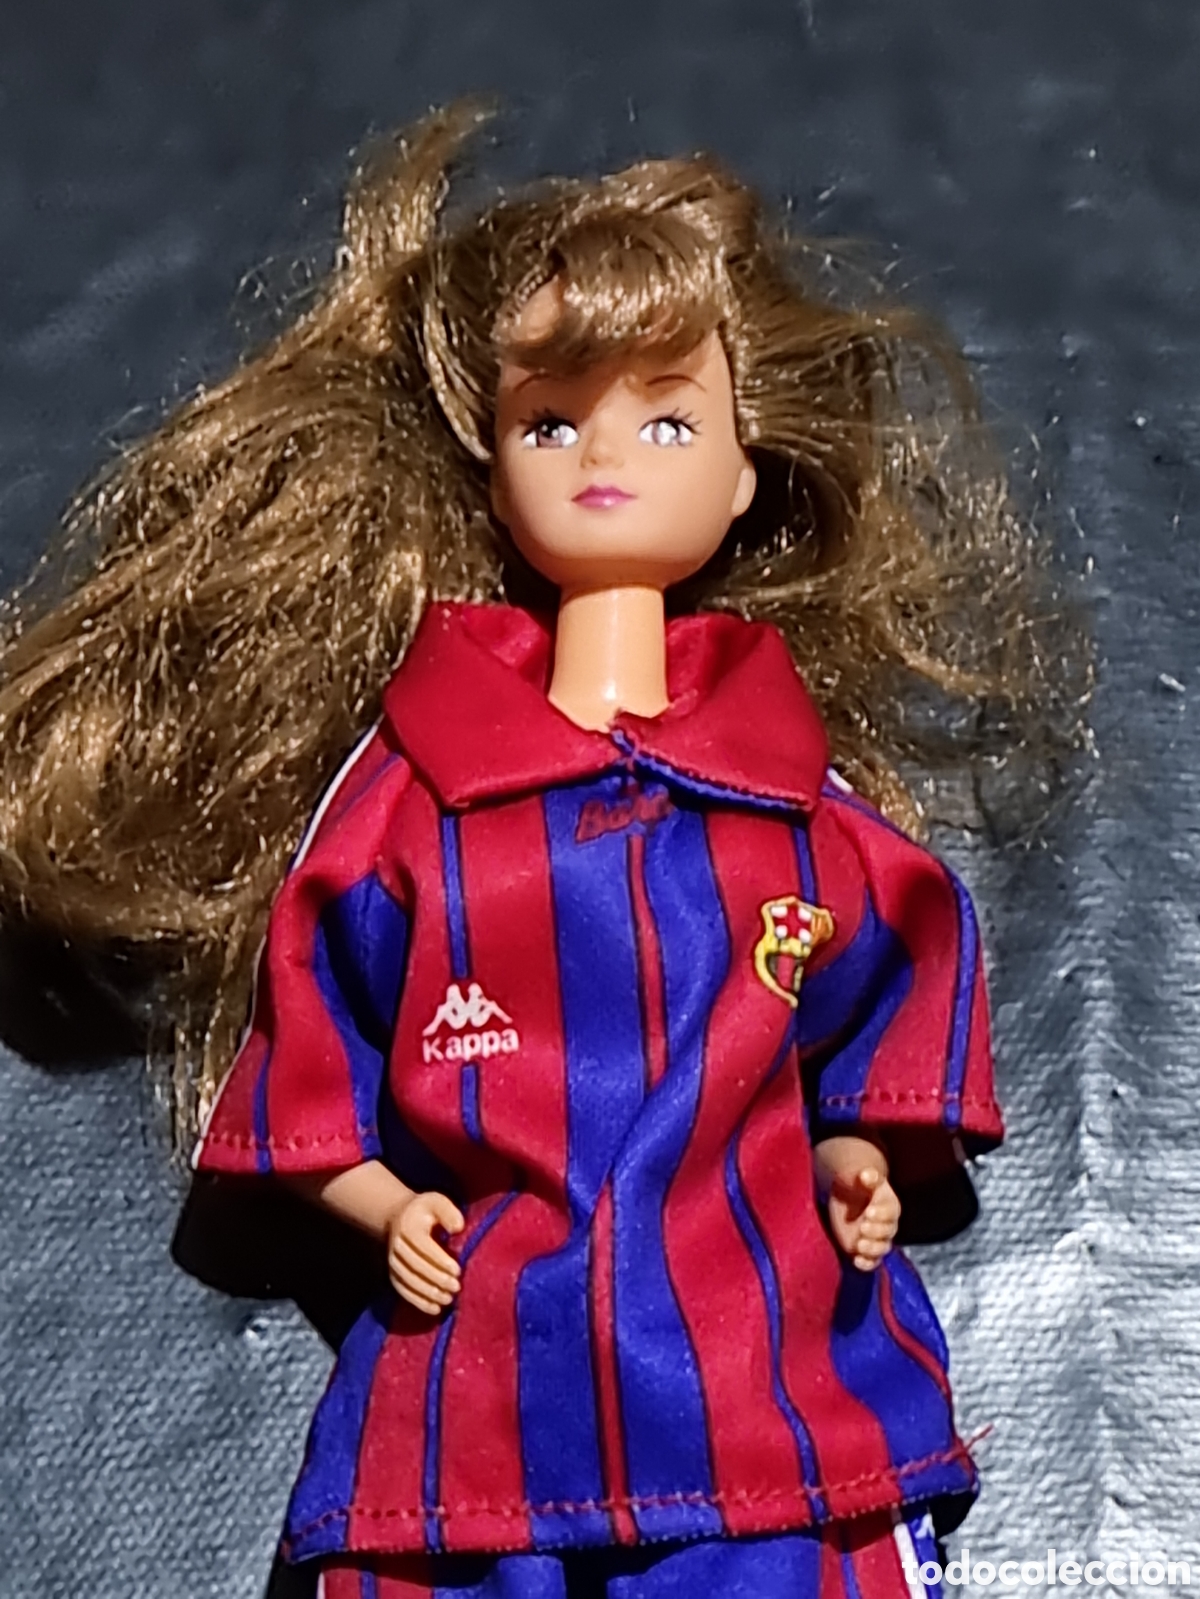 Inminente Familiarizarse Excepcional barbie u similar f.c.barcelona kappa - Comprar Muñecas Barbie y Ken  Antiguas en todocoleccion - 368815001